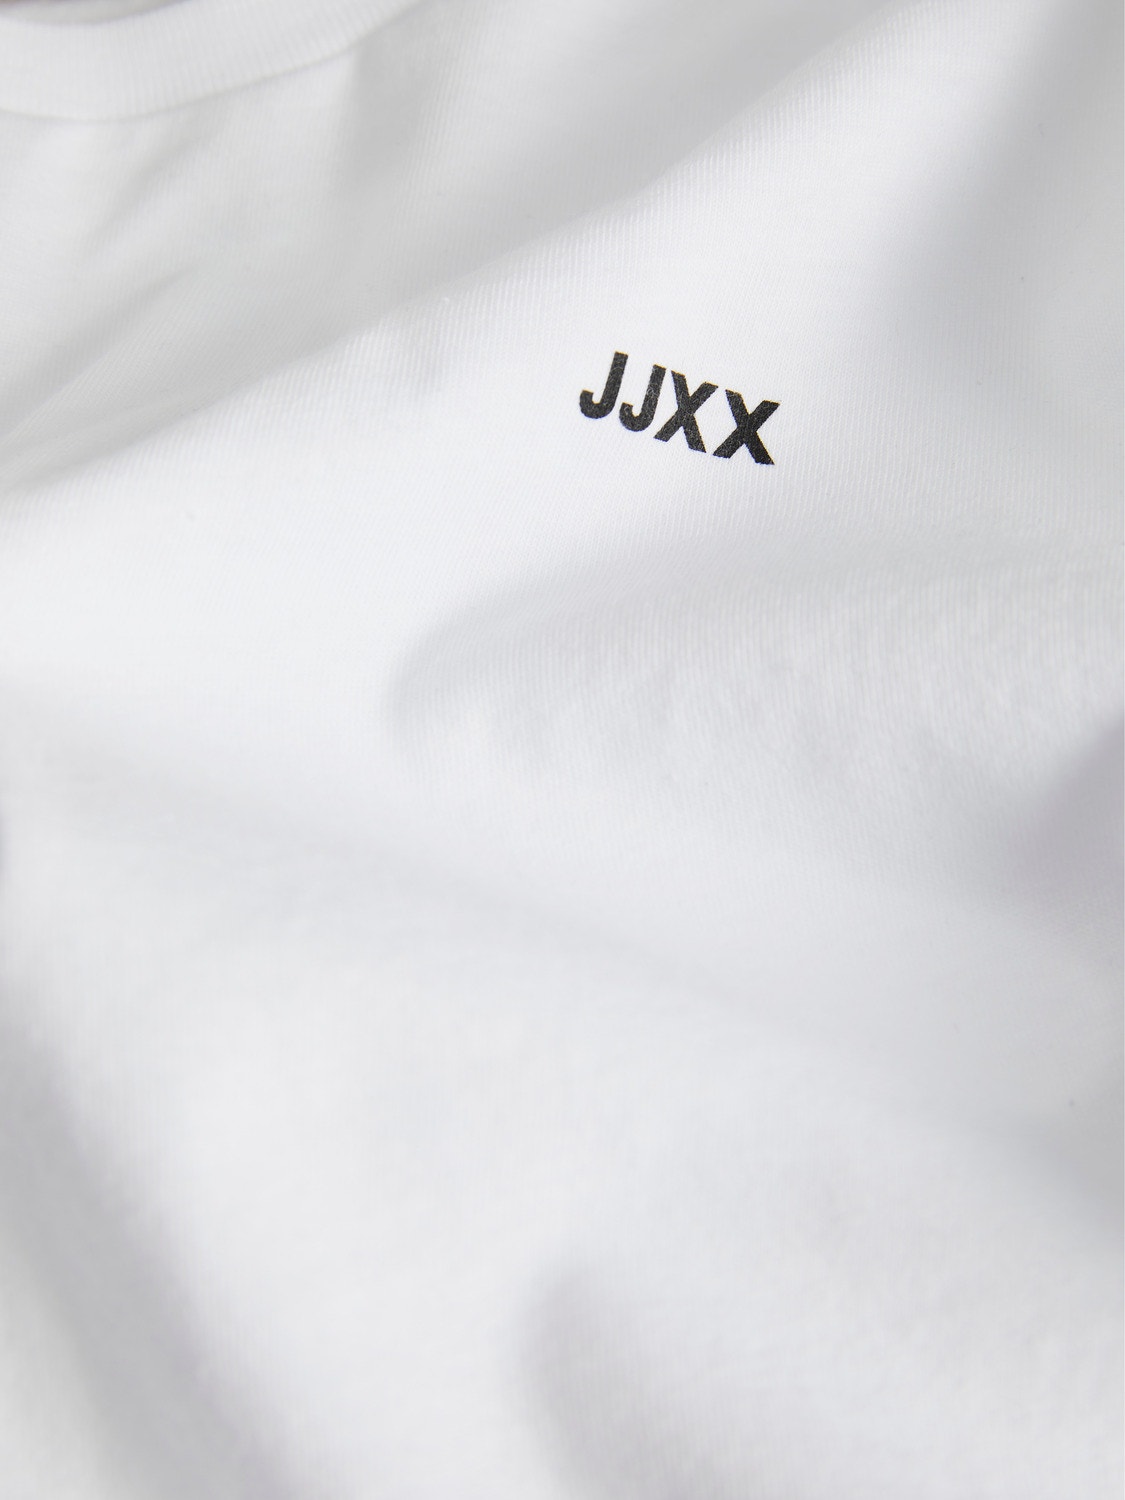 JJXX JXANNA Marškinėliai -Bright White - 12206974